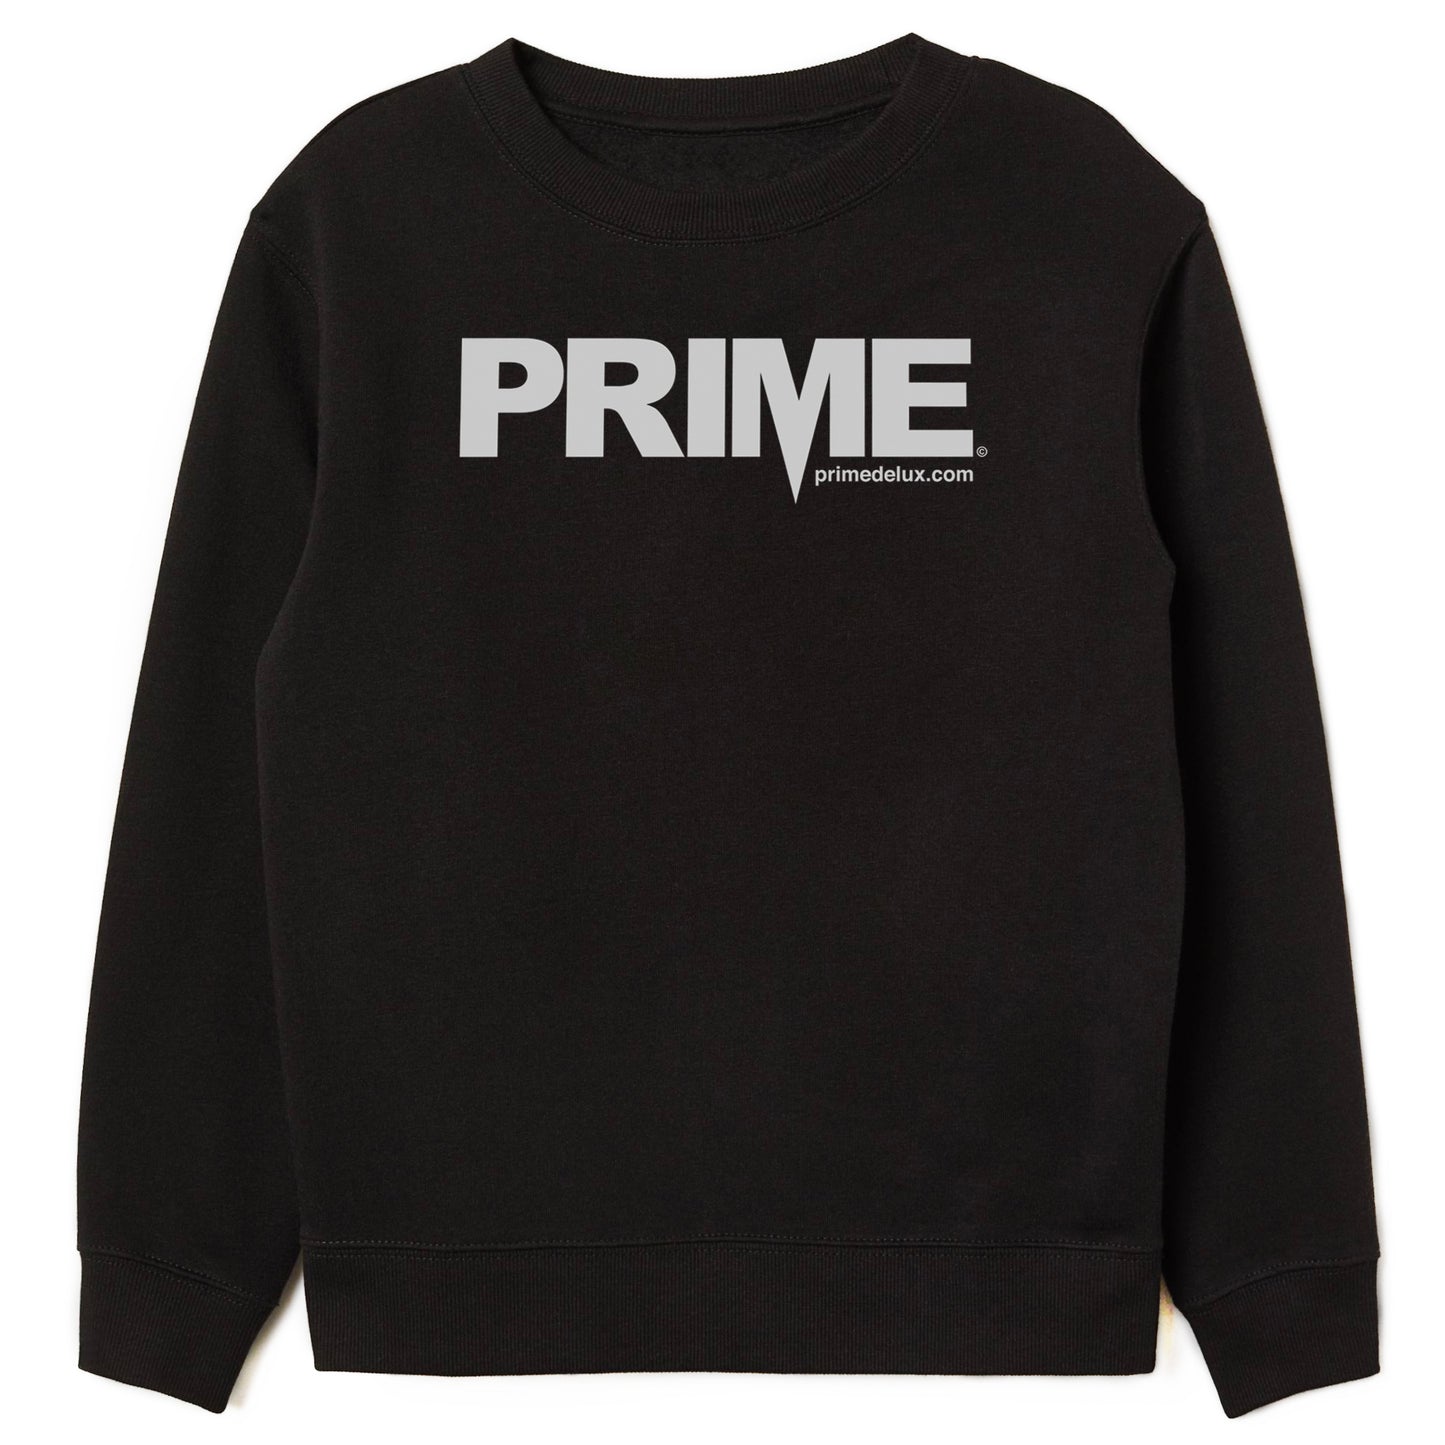 Prime Delux OG Logo Crew - Black / White - Prime Delux Store